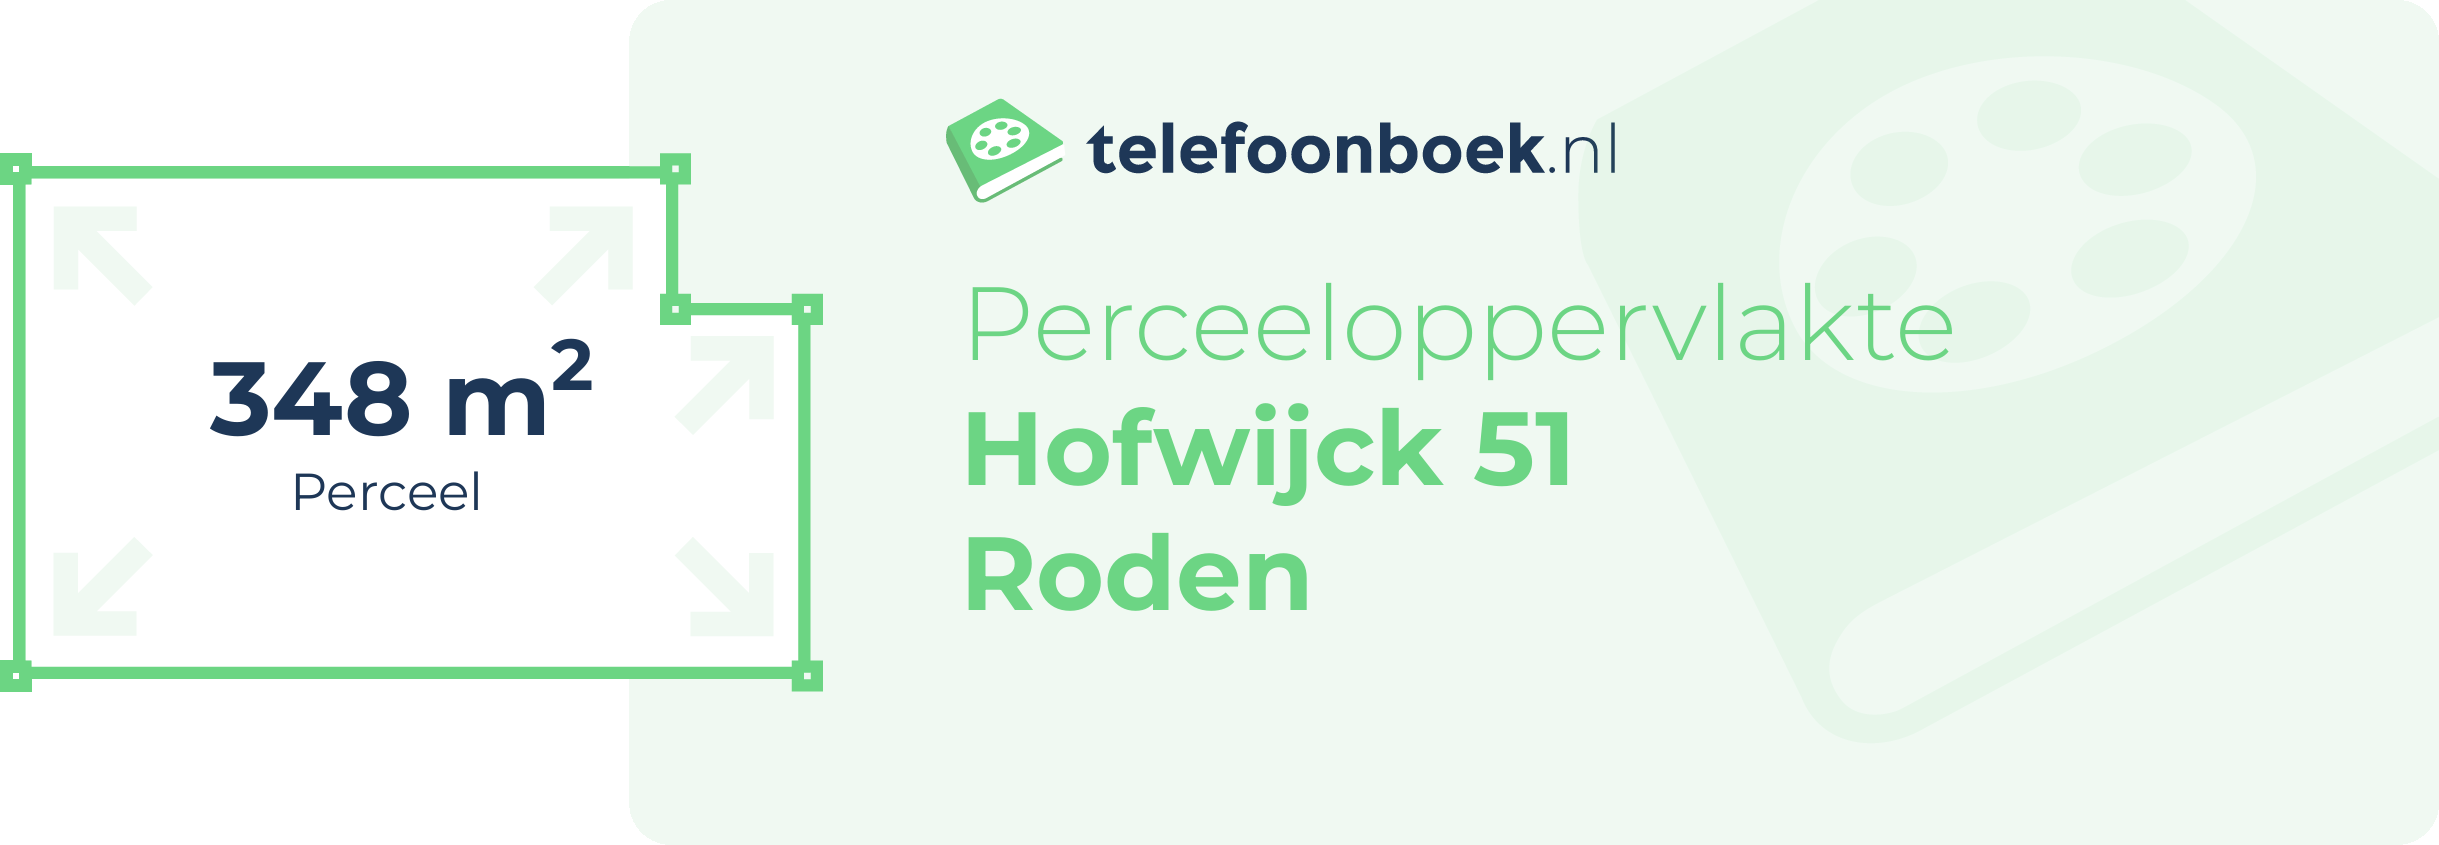 Perceeloppervlakte Hofwijck 51 Roden